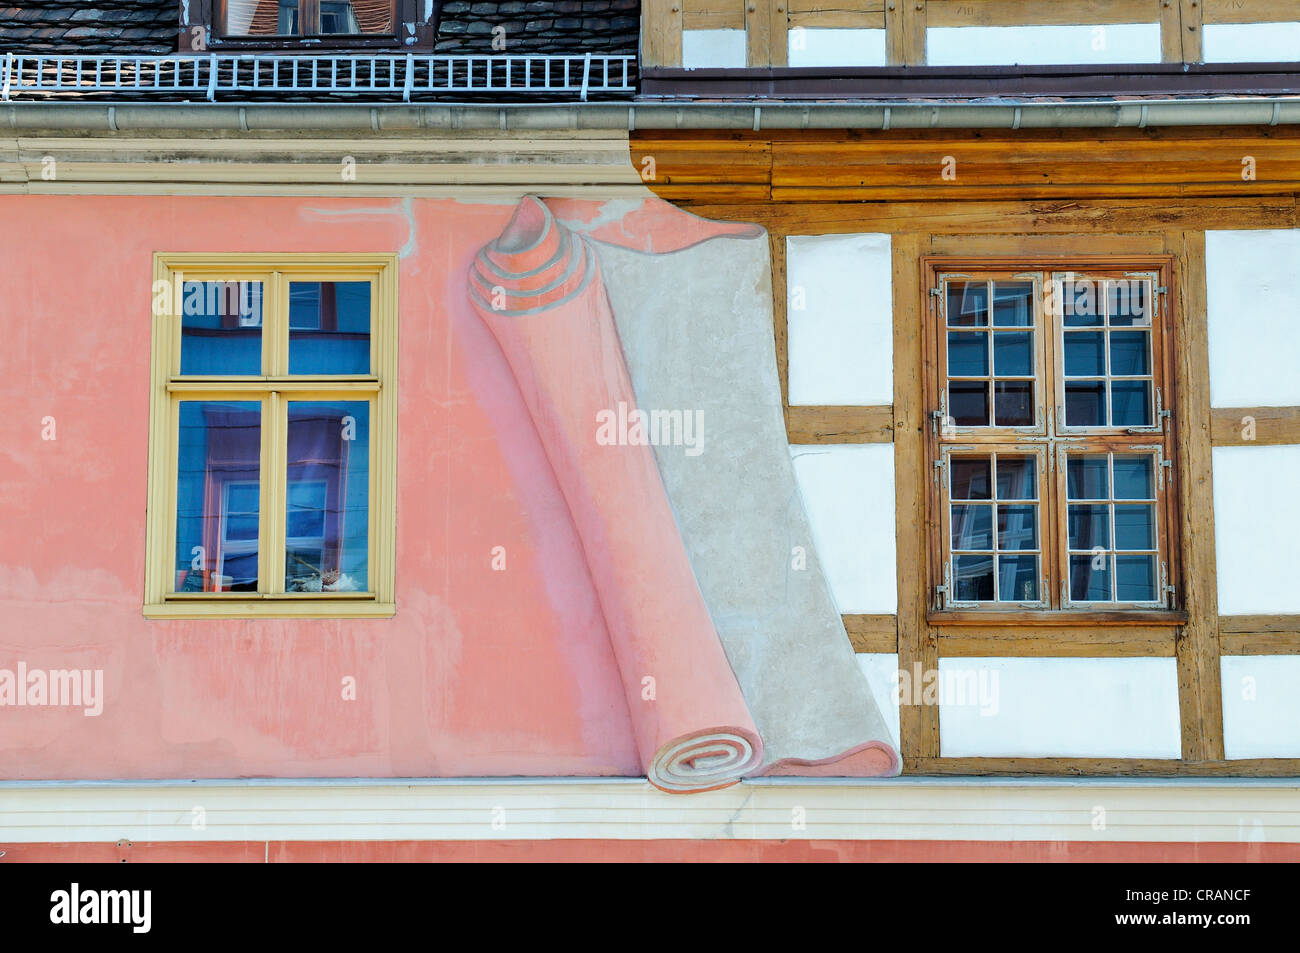 Künstlerische Darstellung von einer Wand entfernt um eine Fachwerk-Fassade, Potsdam, Brandenburg, Deutschland, Europa verfügbar zu machen Stockfoto